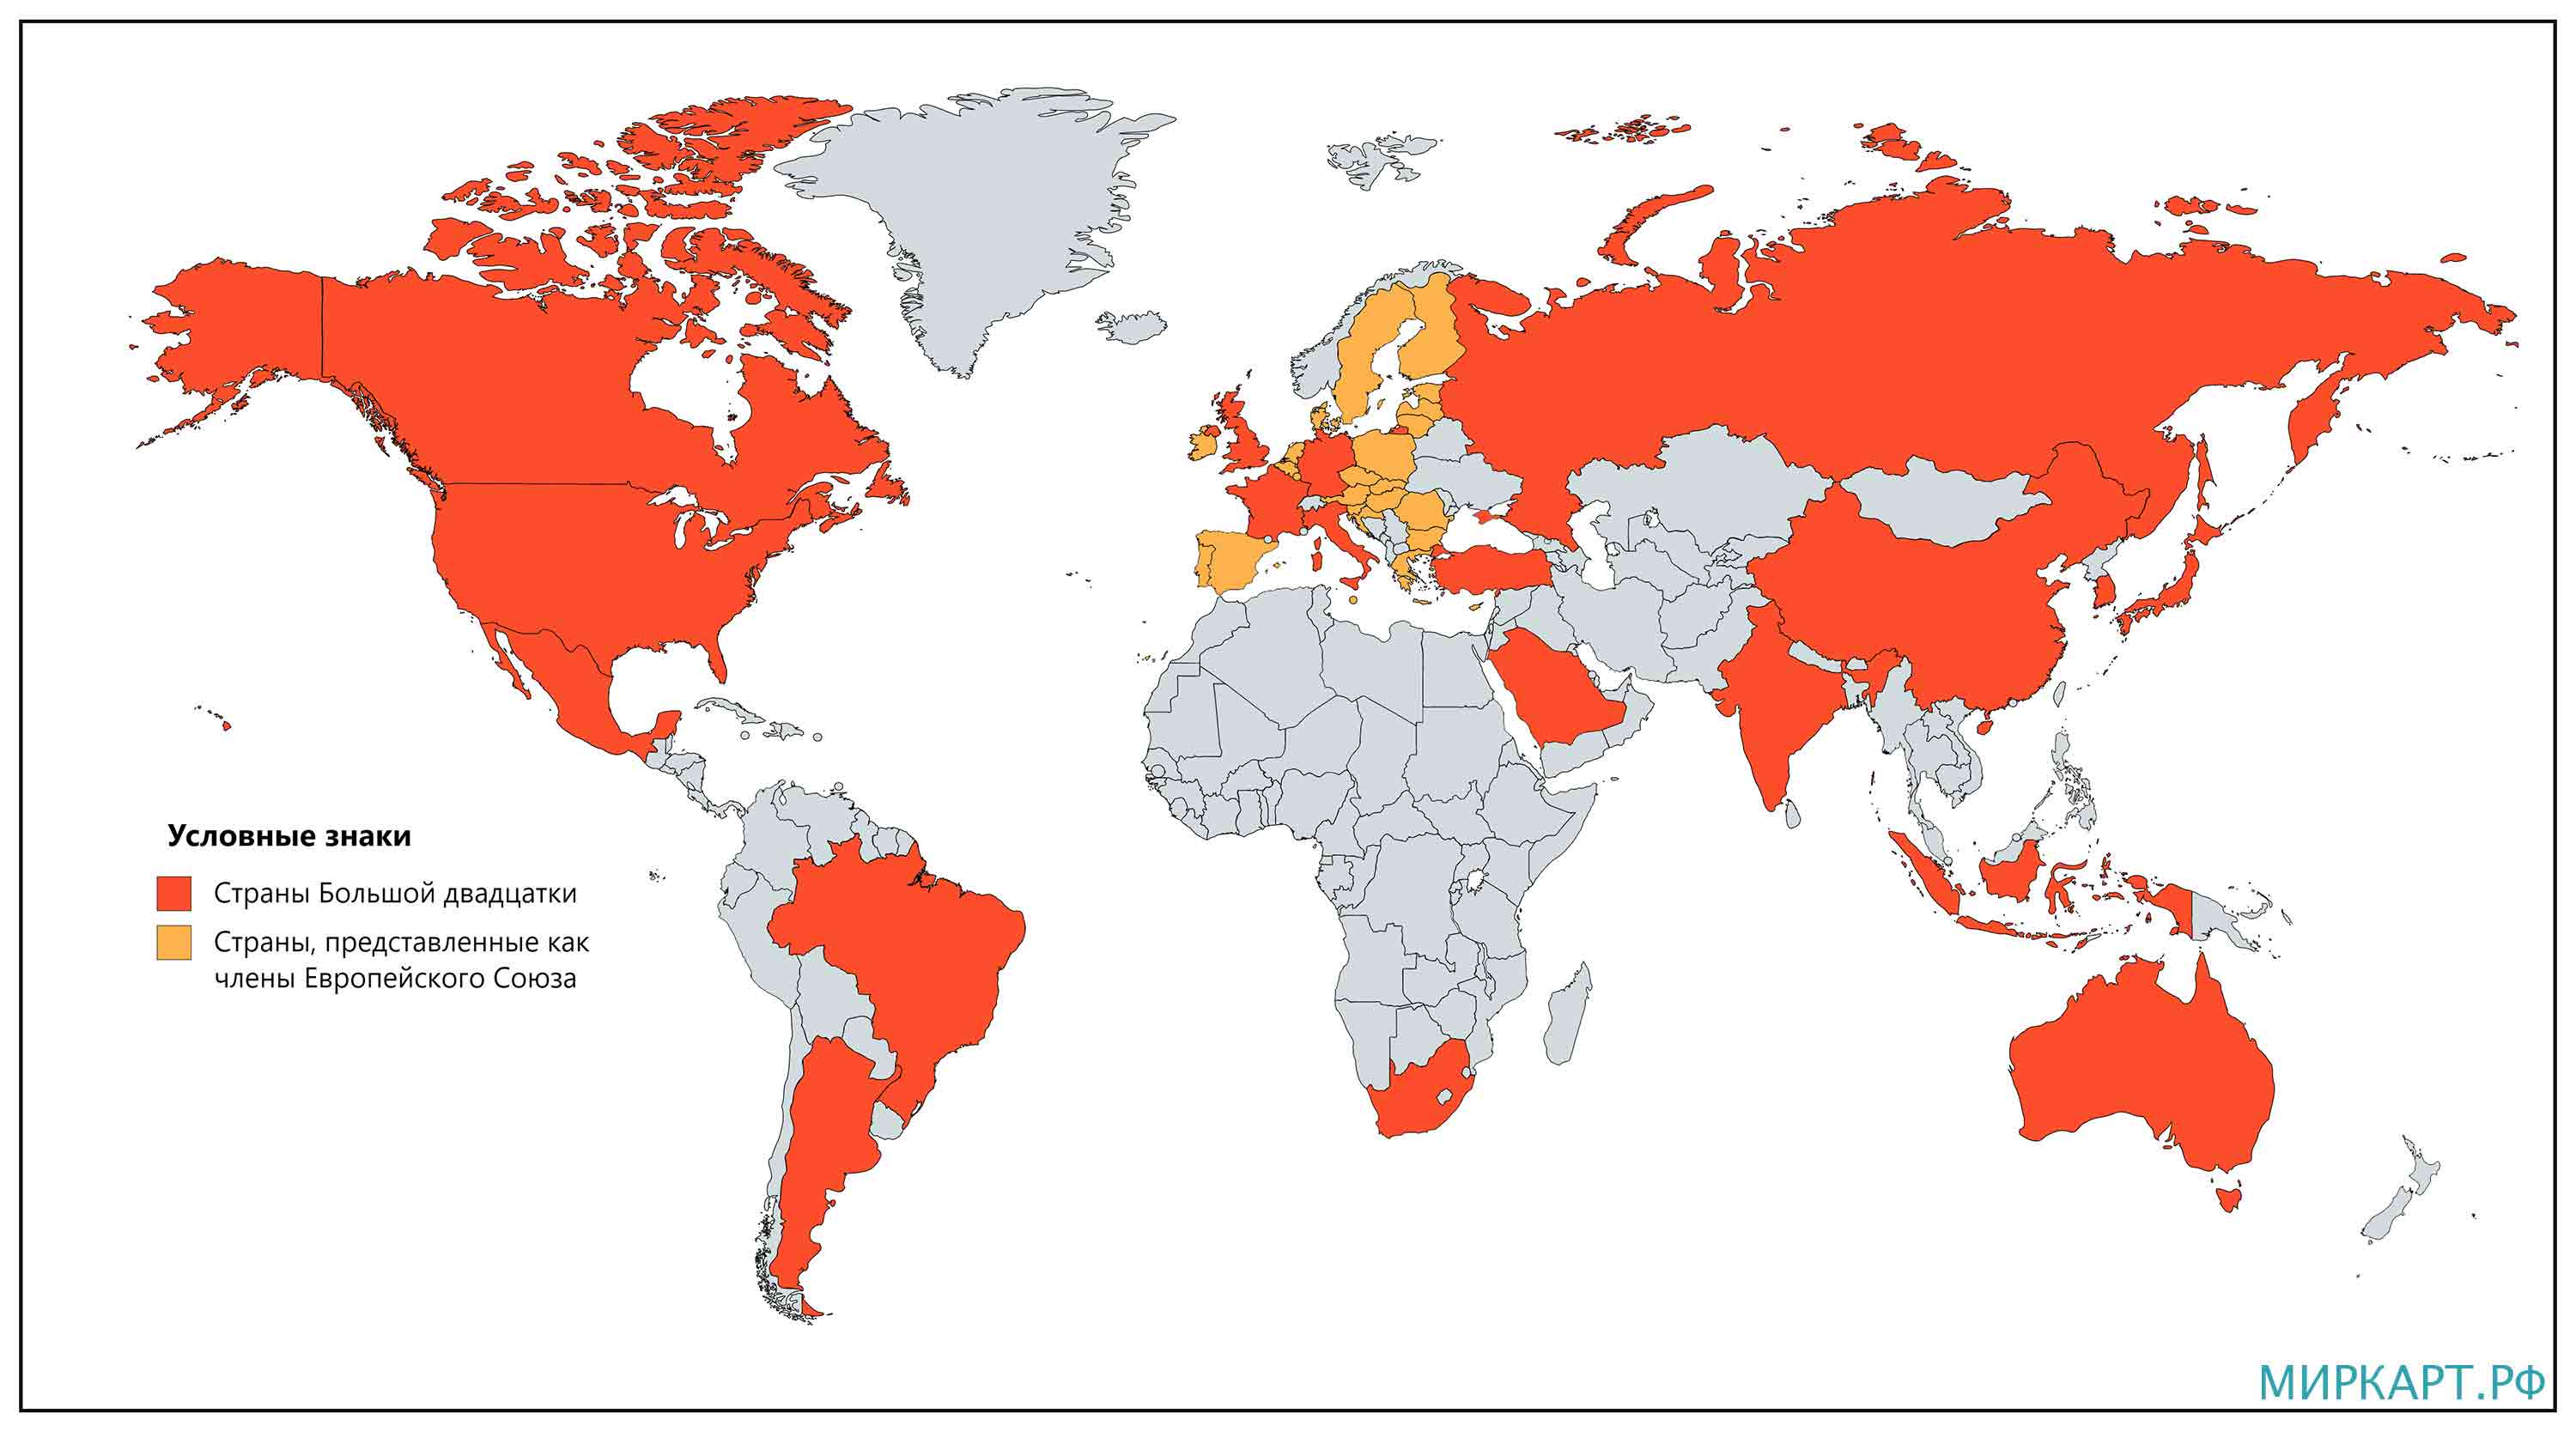 Карта стран Большой двадцатки